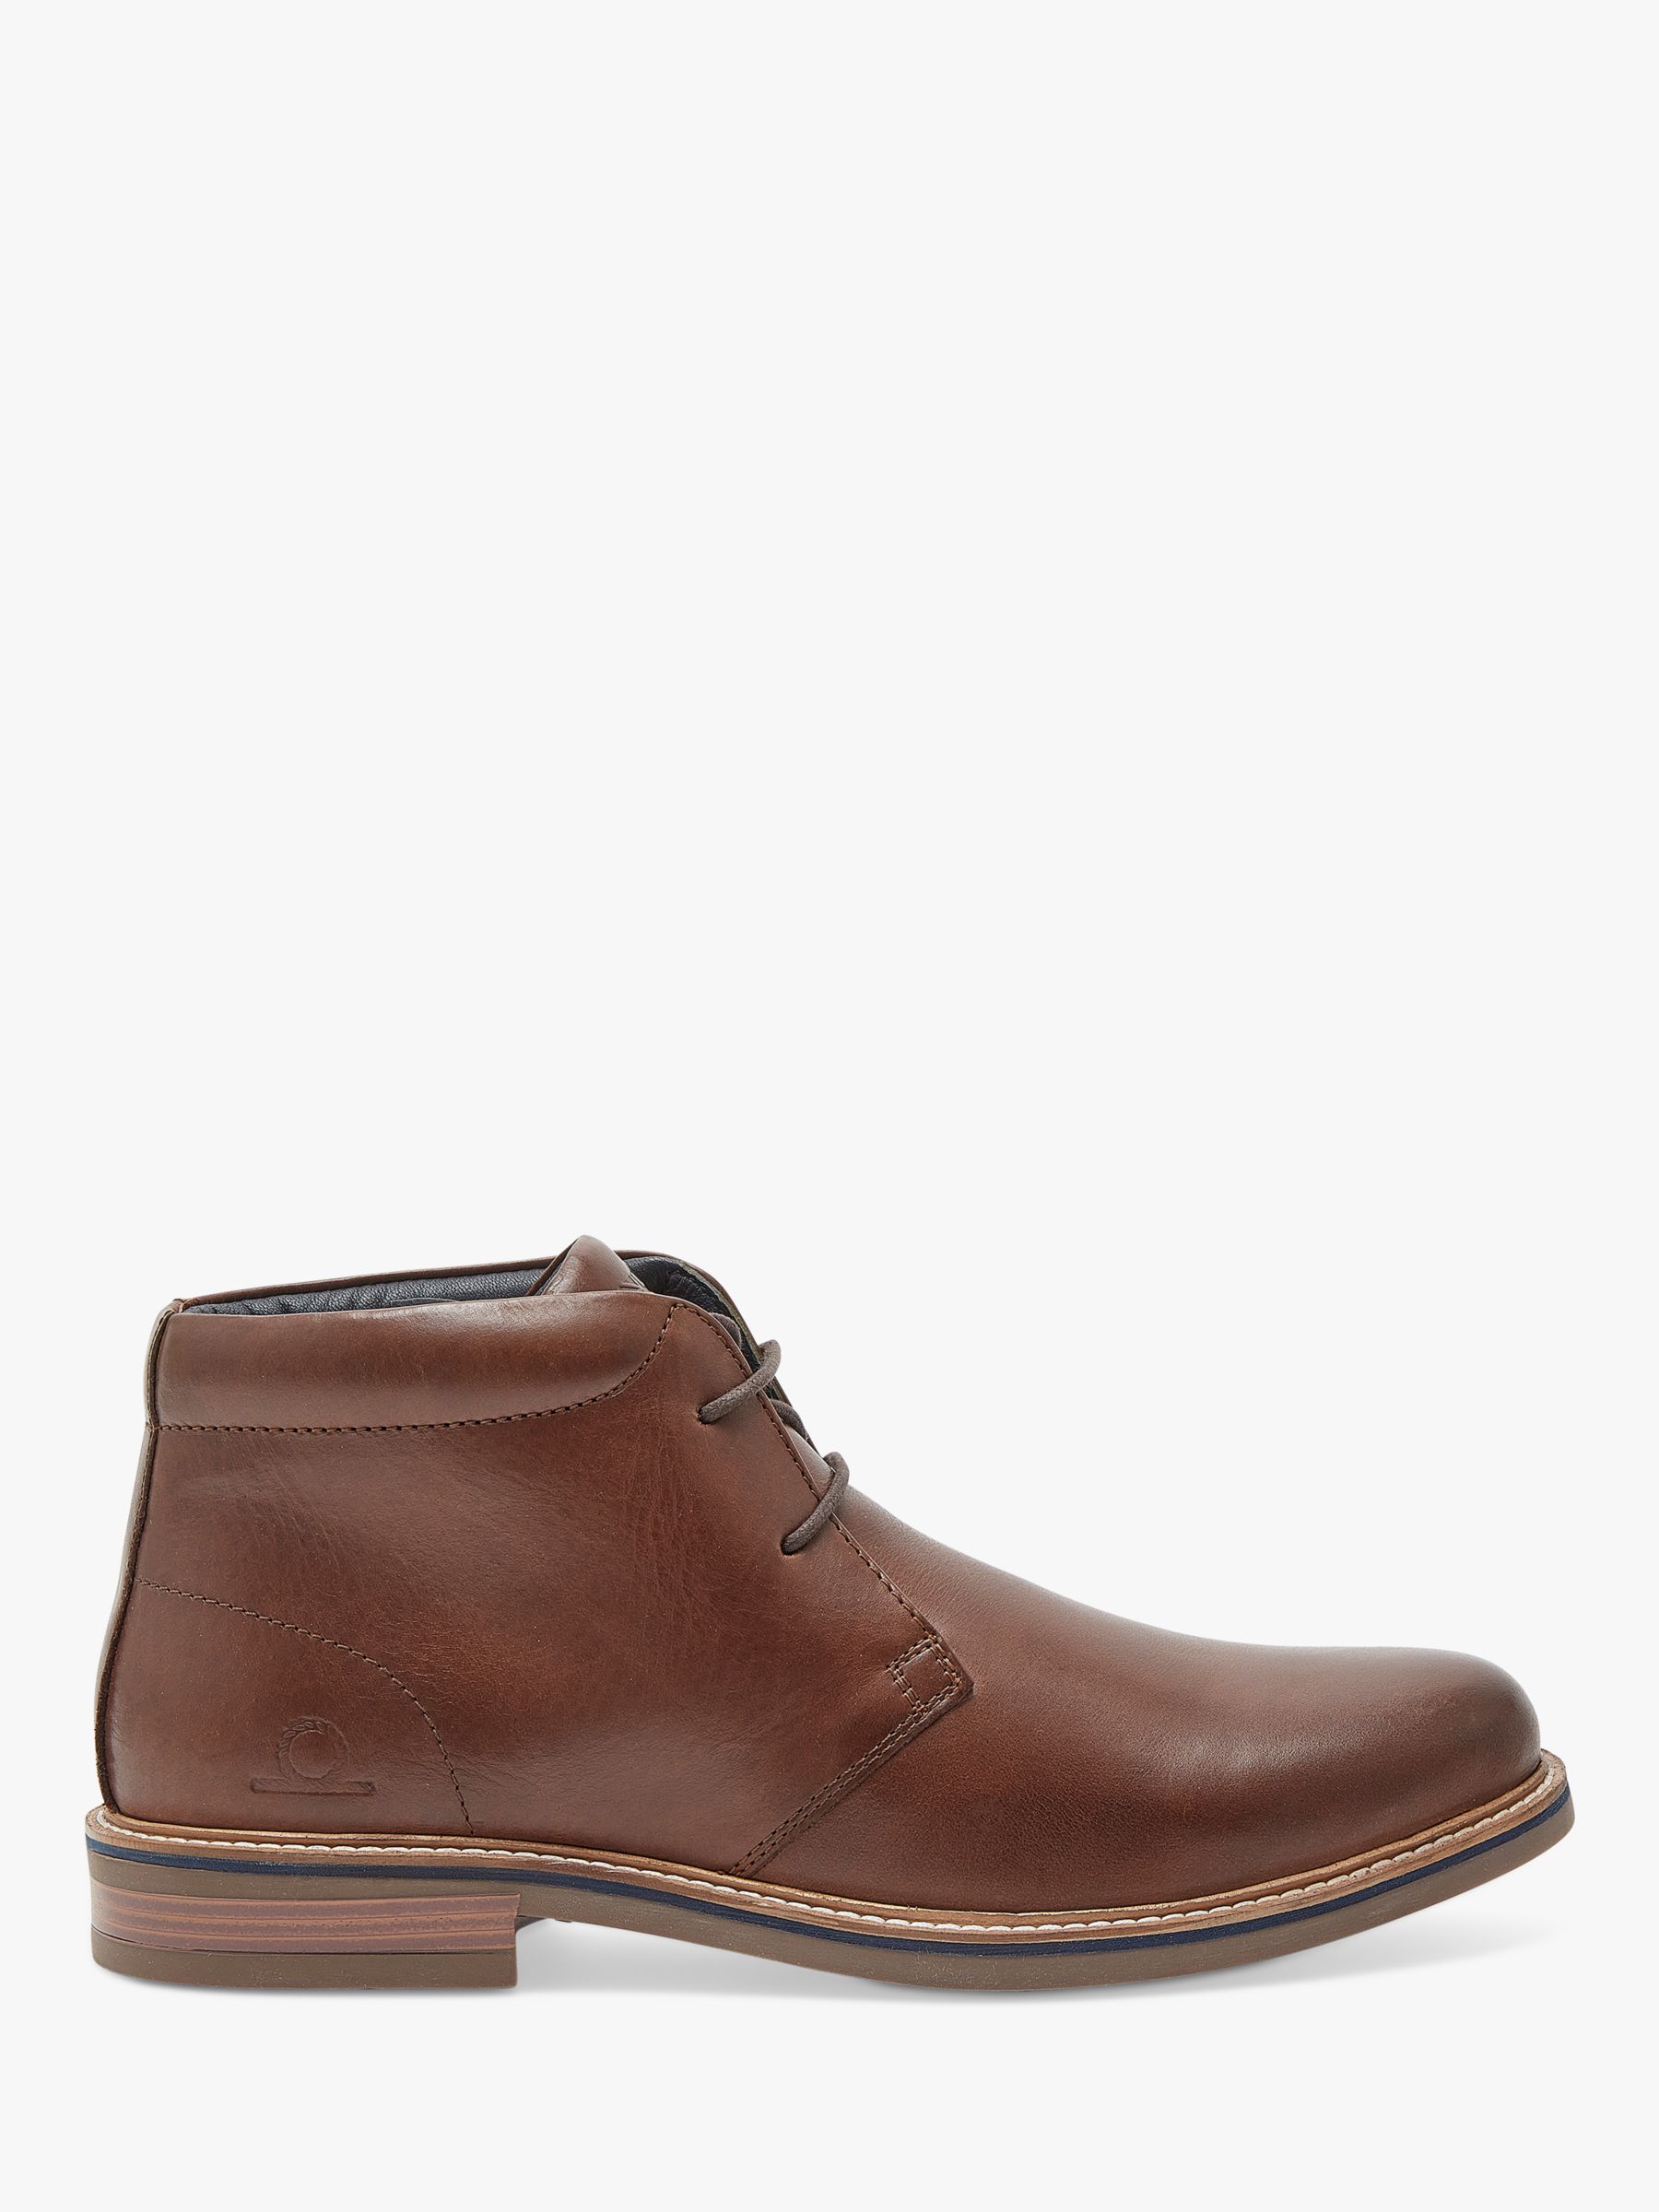 Кожаные ботинки чукка Buckland Chatham, темно коричневый